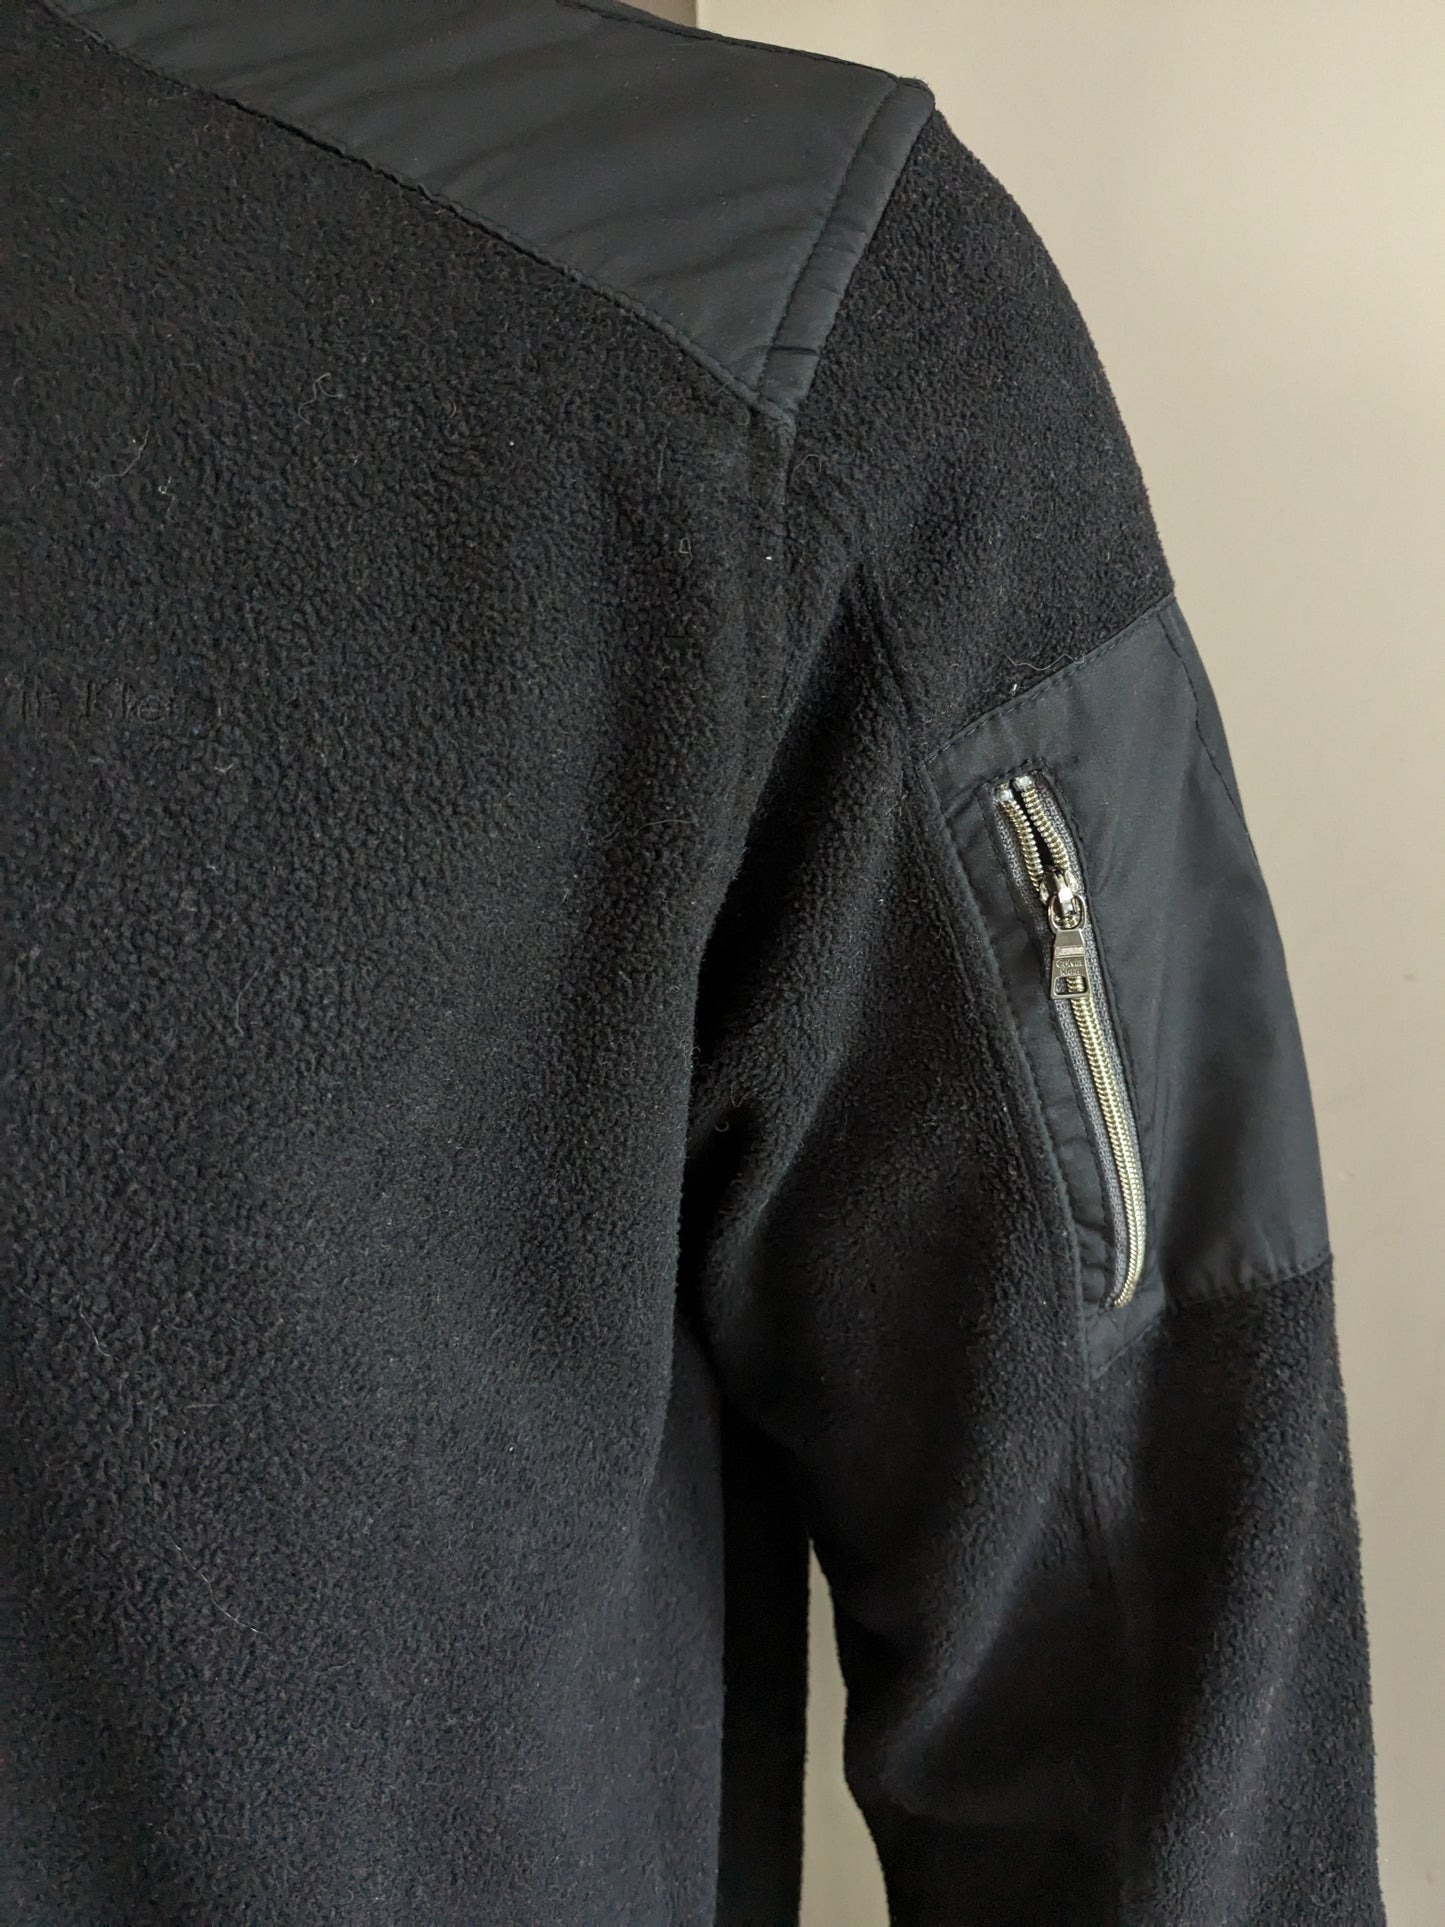 Calvin Klein Tech Fleece trui met rits. Zwart gekleurd. Maat L.